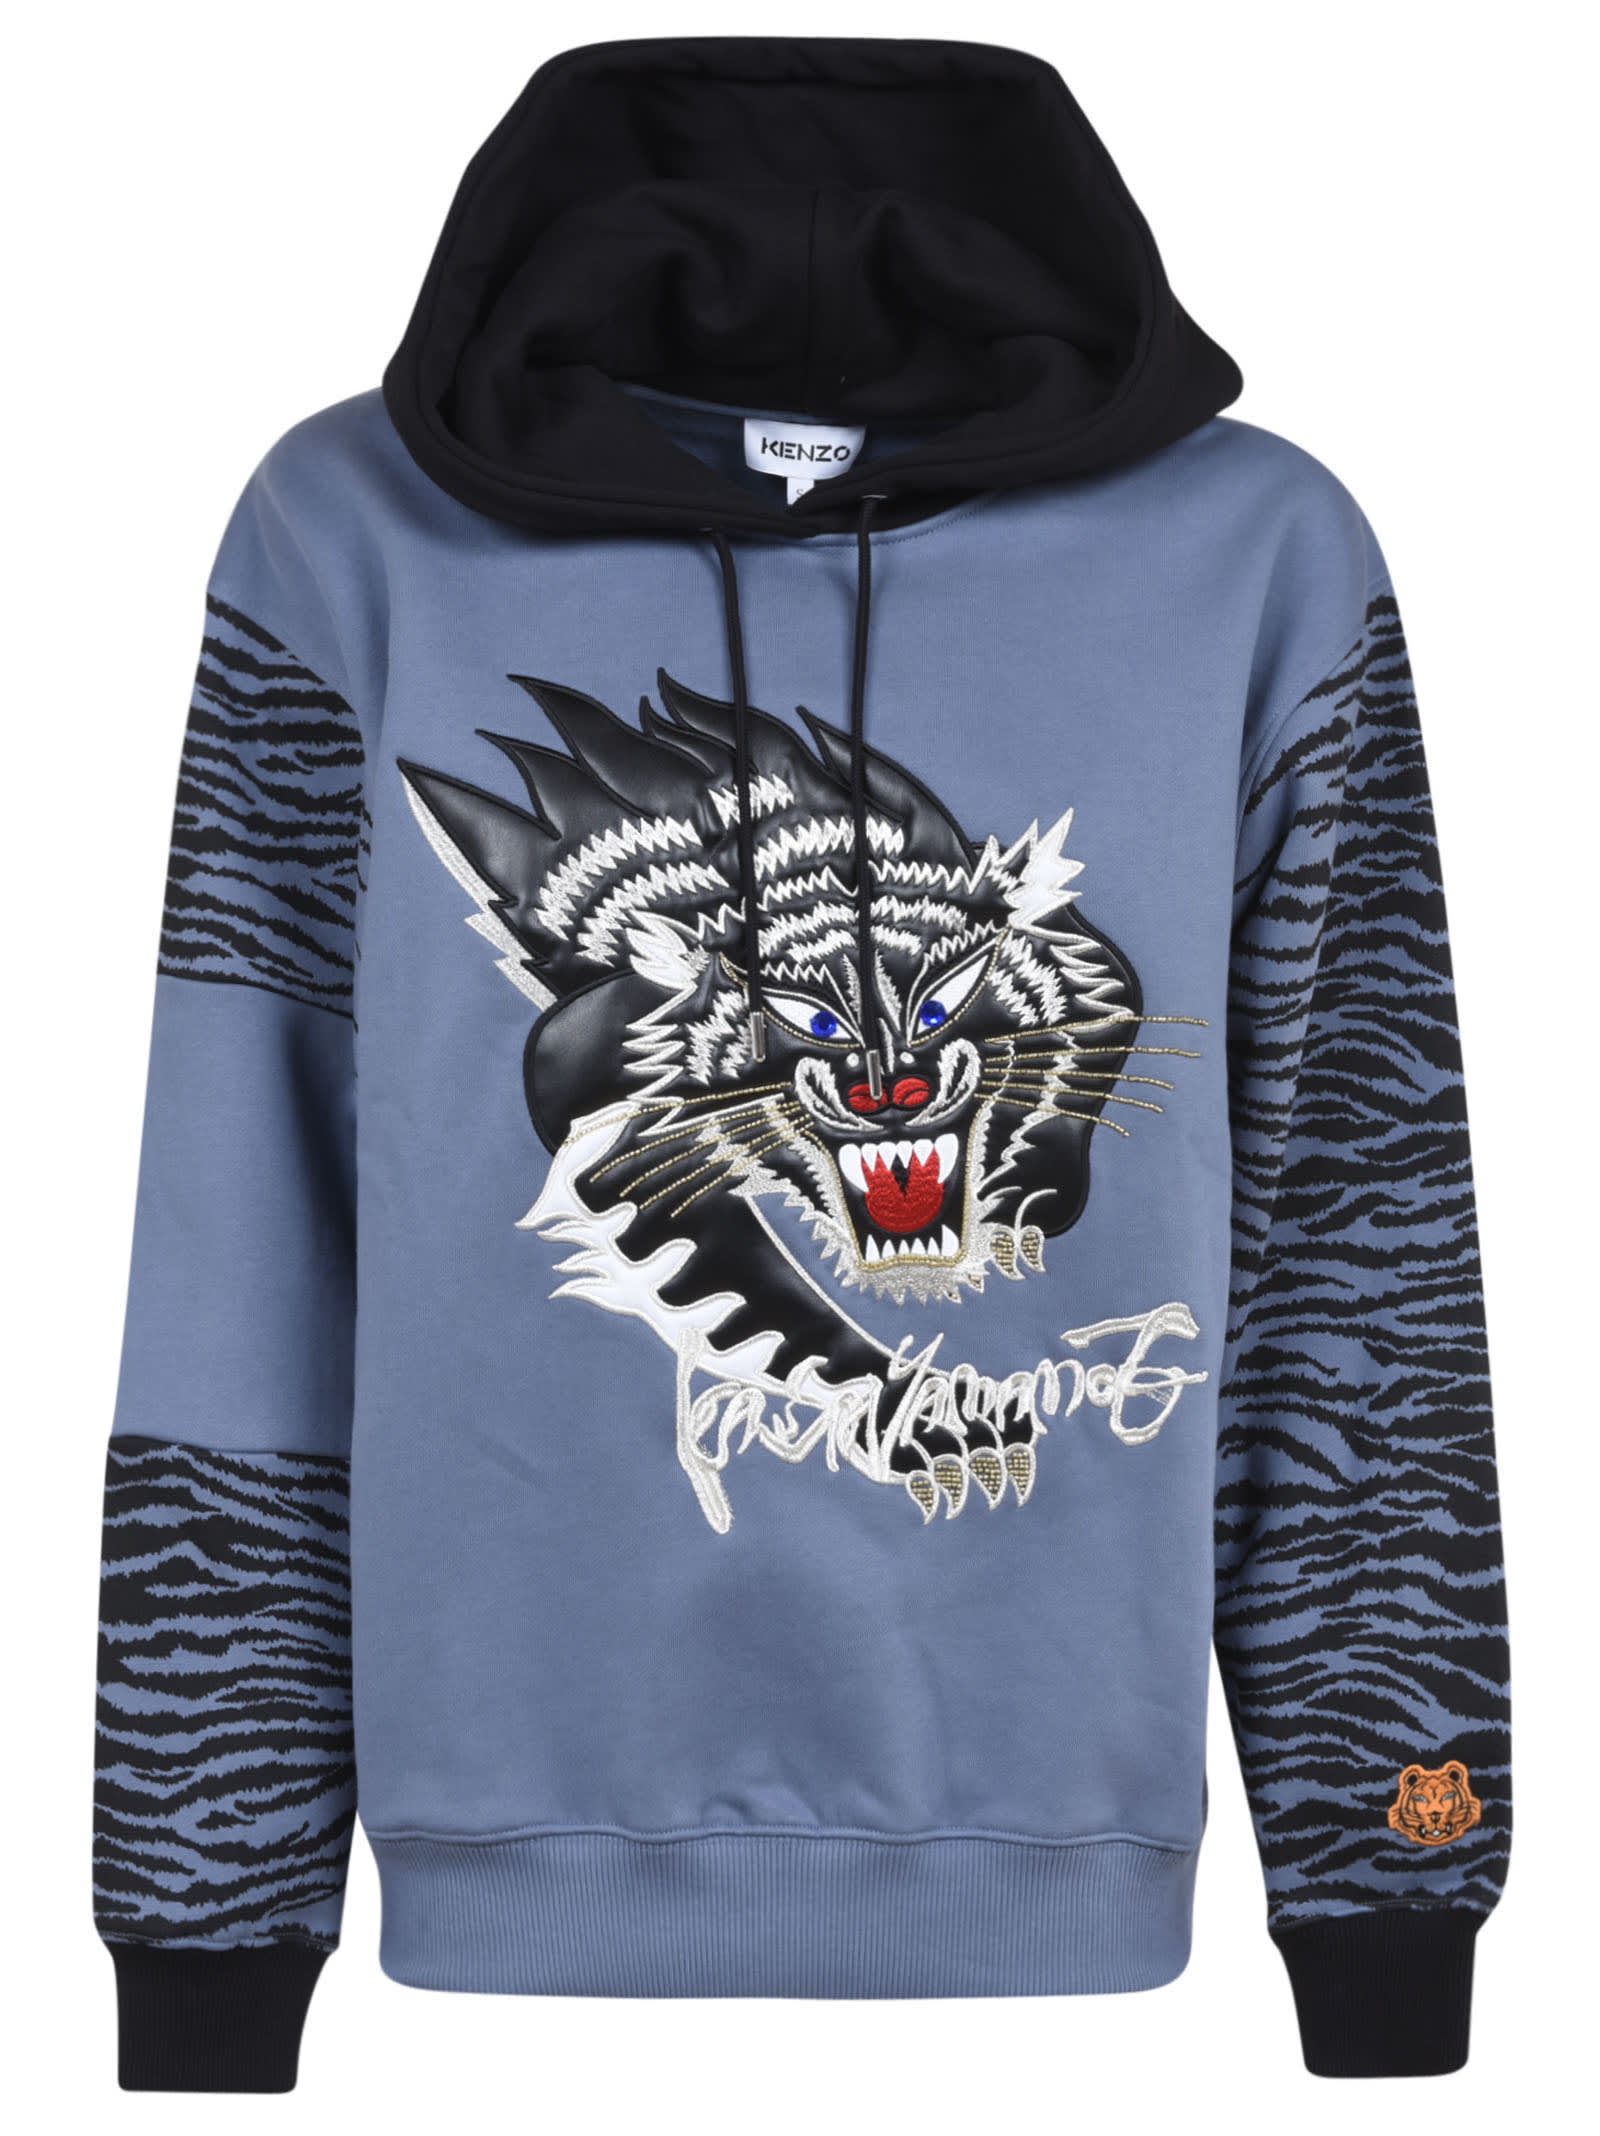 Kenzo Tiger Embroidered Hooded Sweatshirt